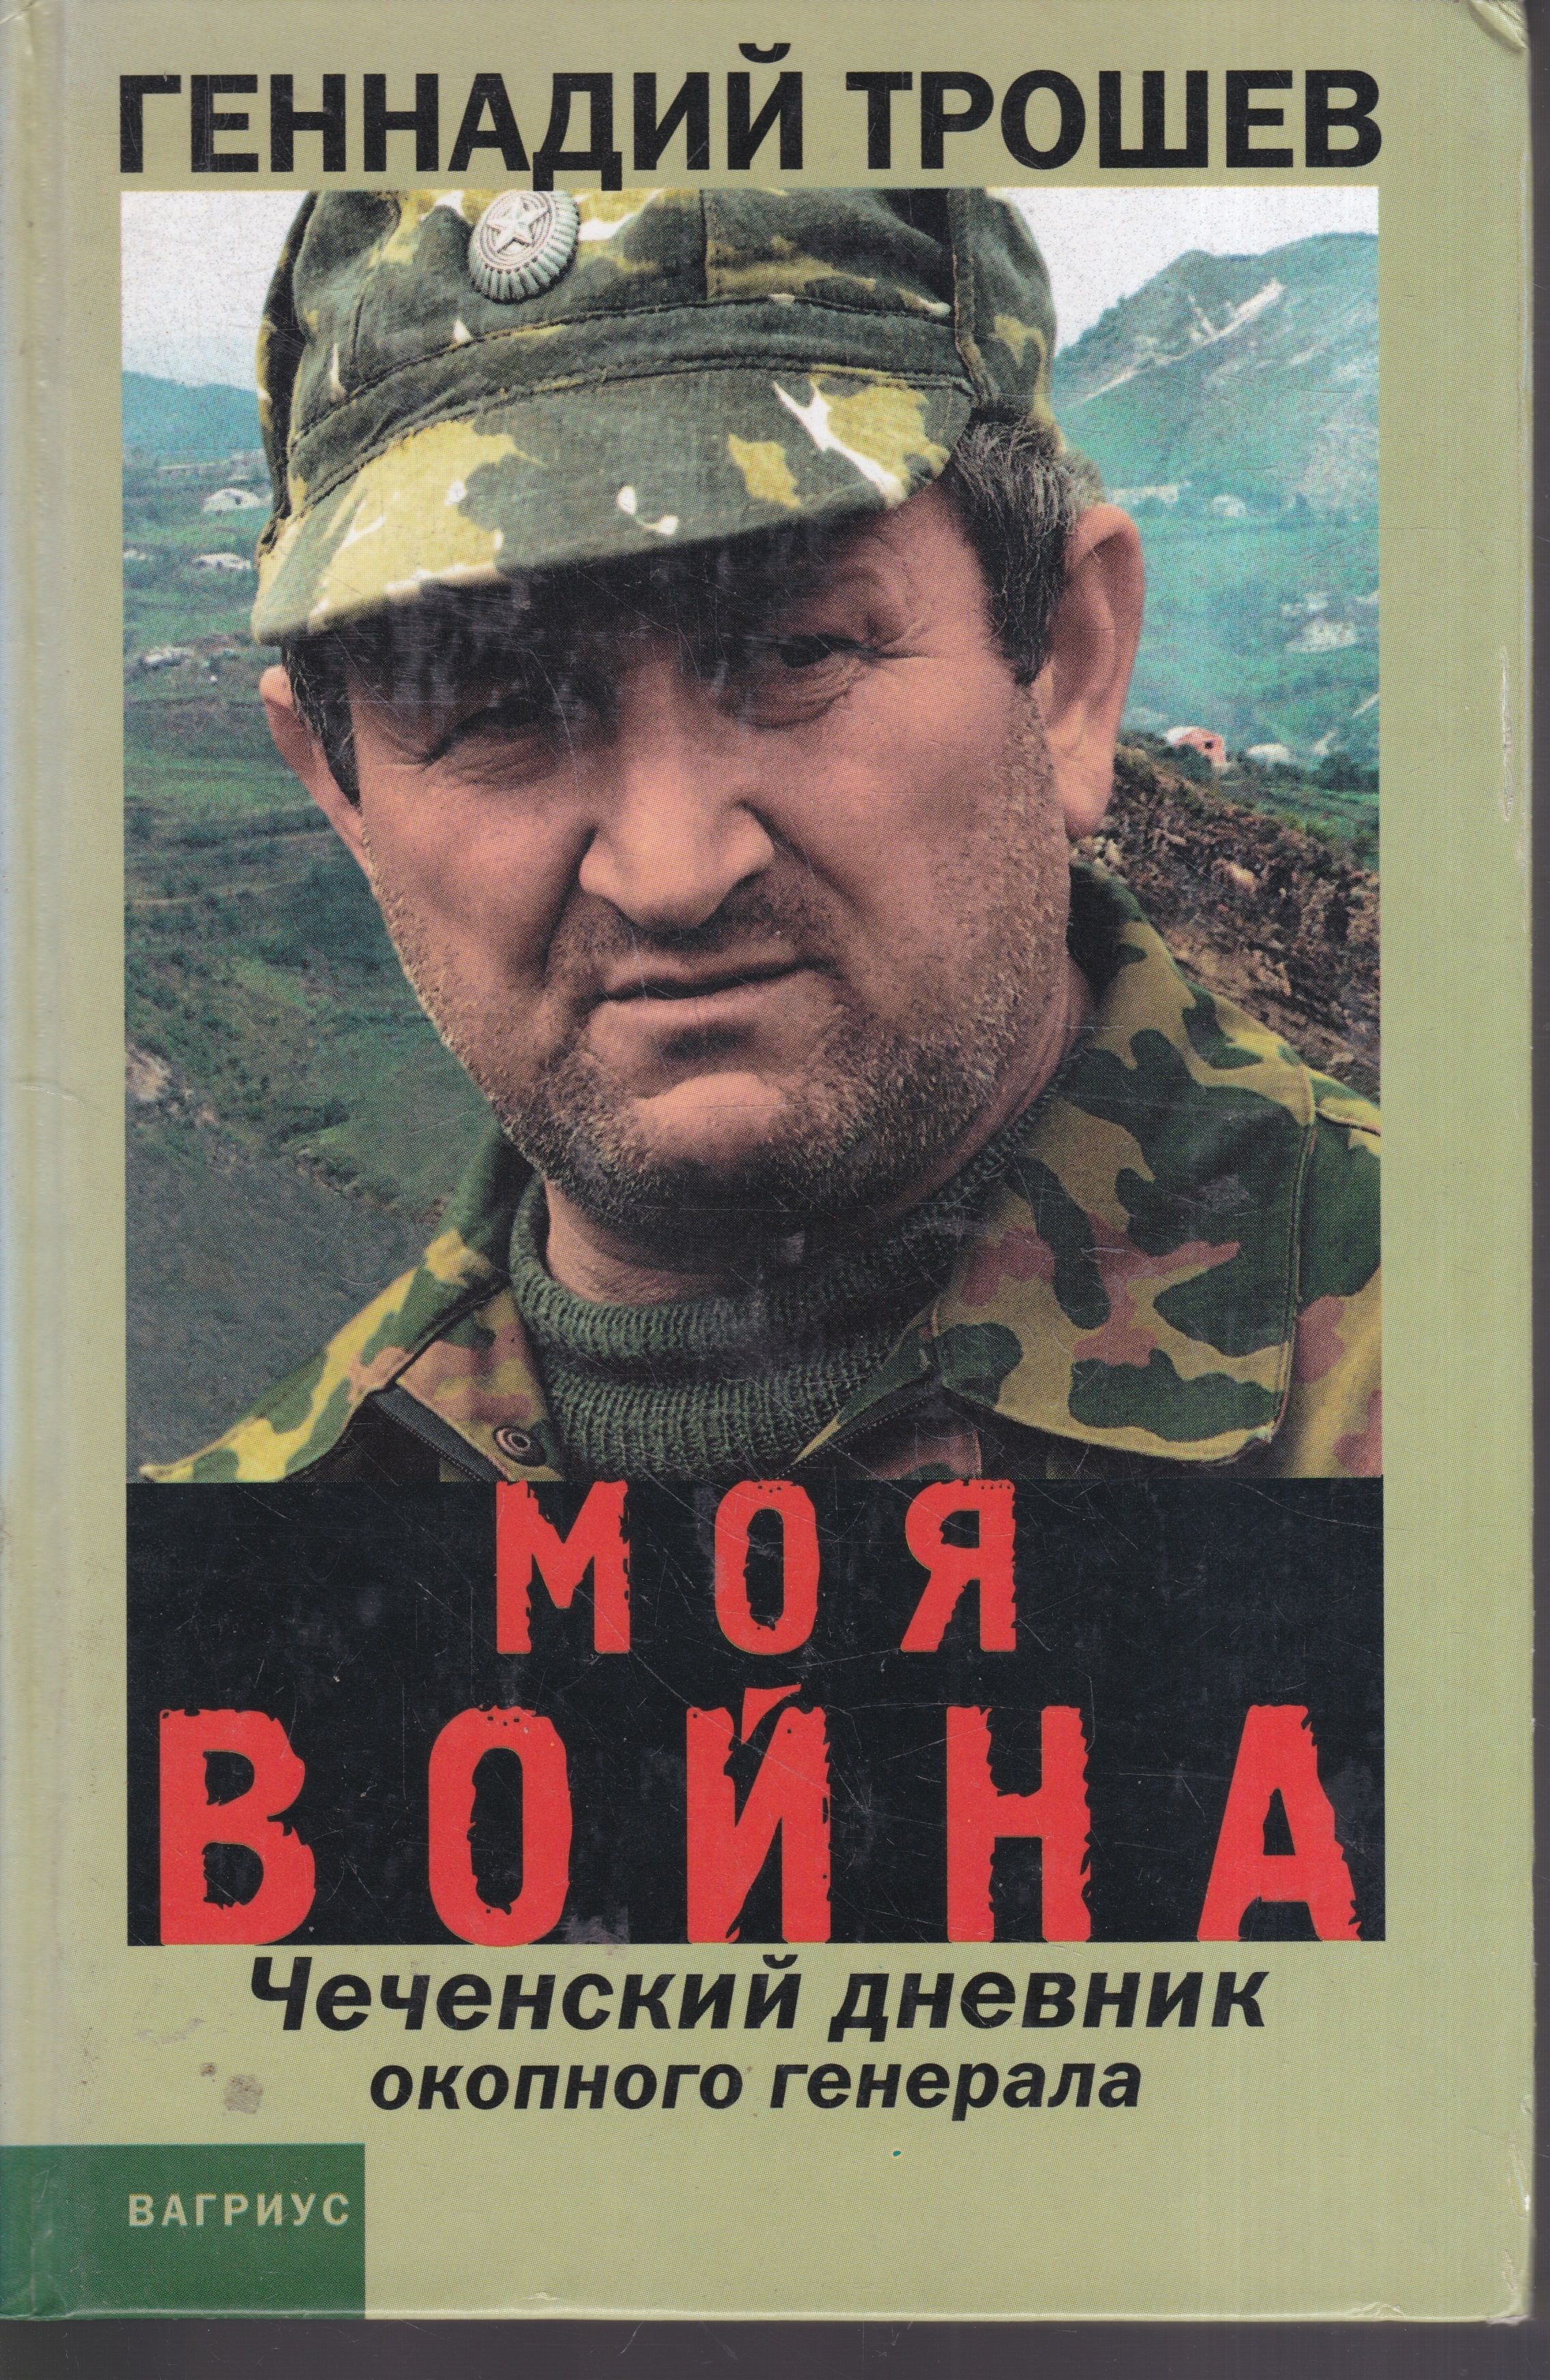 Читать книгу про чечню. Трошев в Чечне.